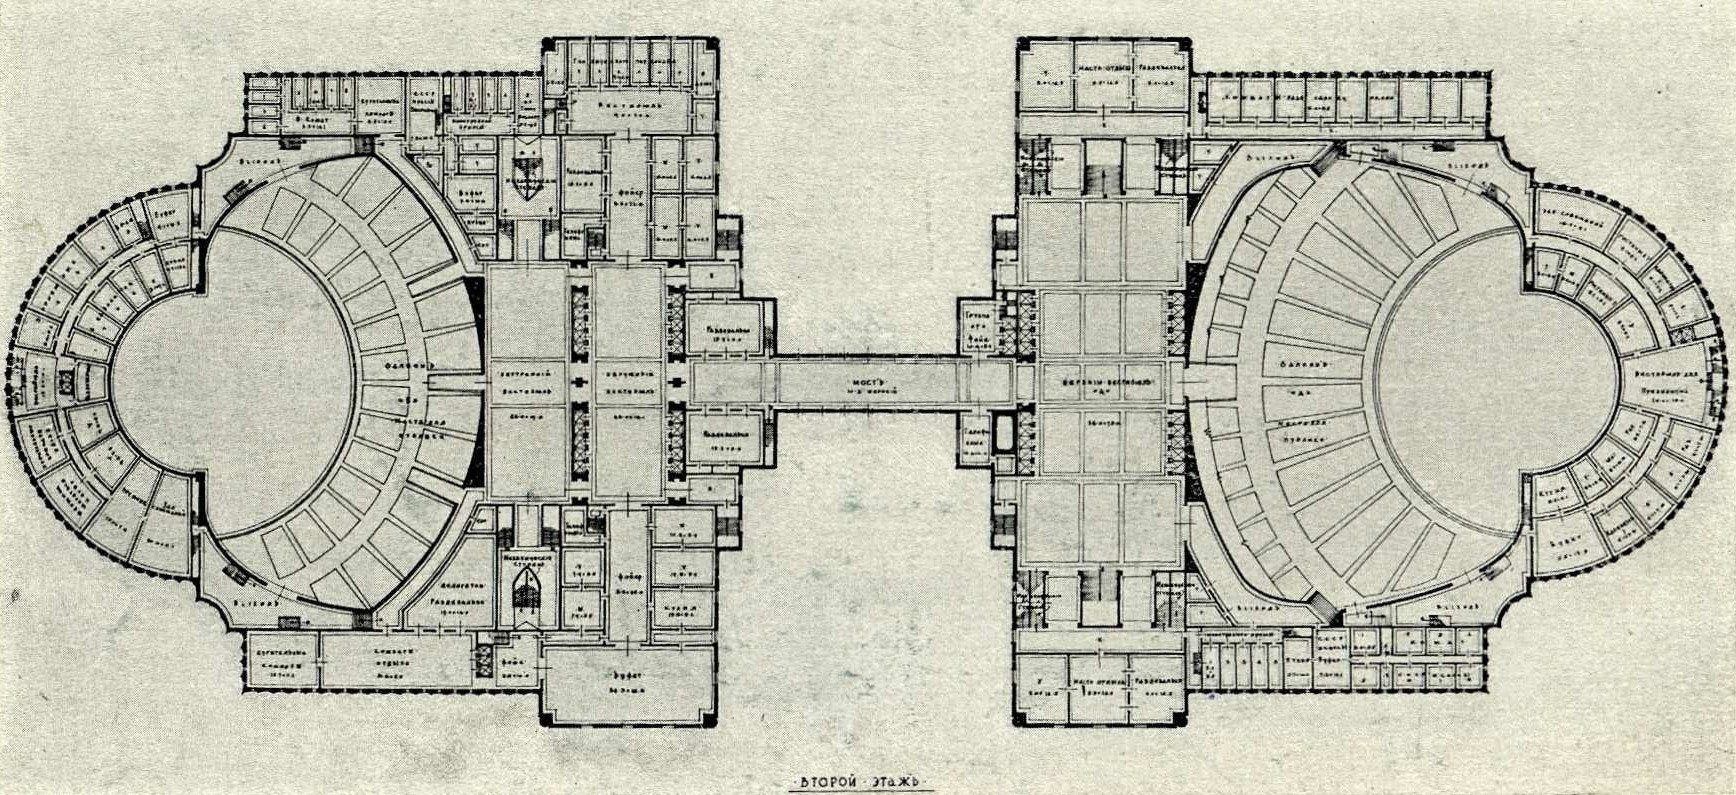 Конкурсный проект Дворца Советов (1932). Гамильтон Г. О.  (САСШ. Высшая премия)